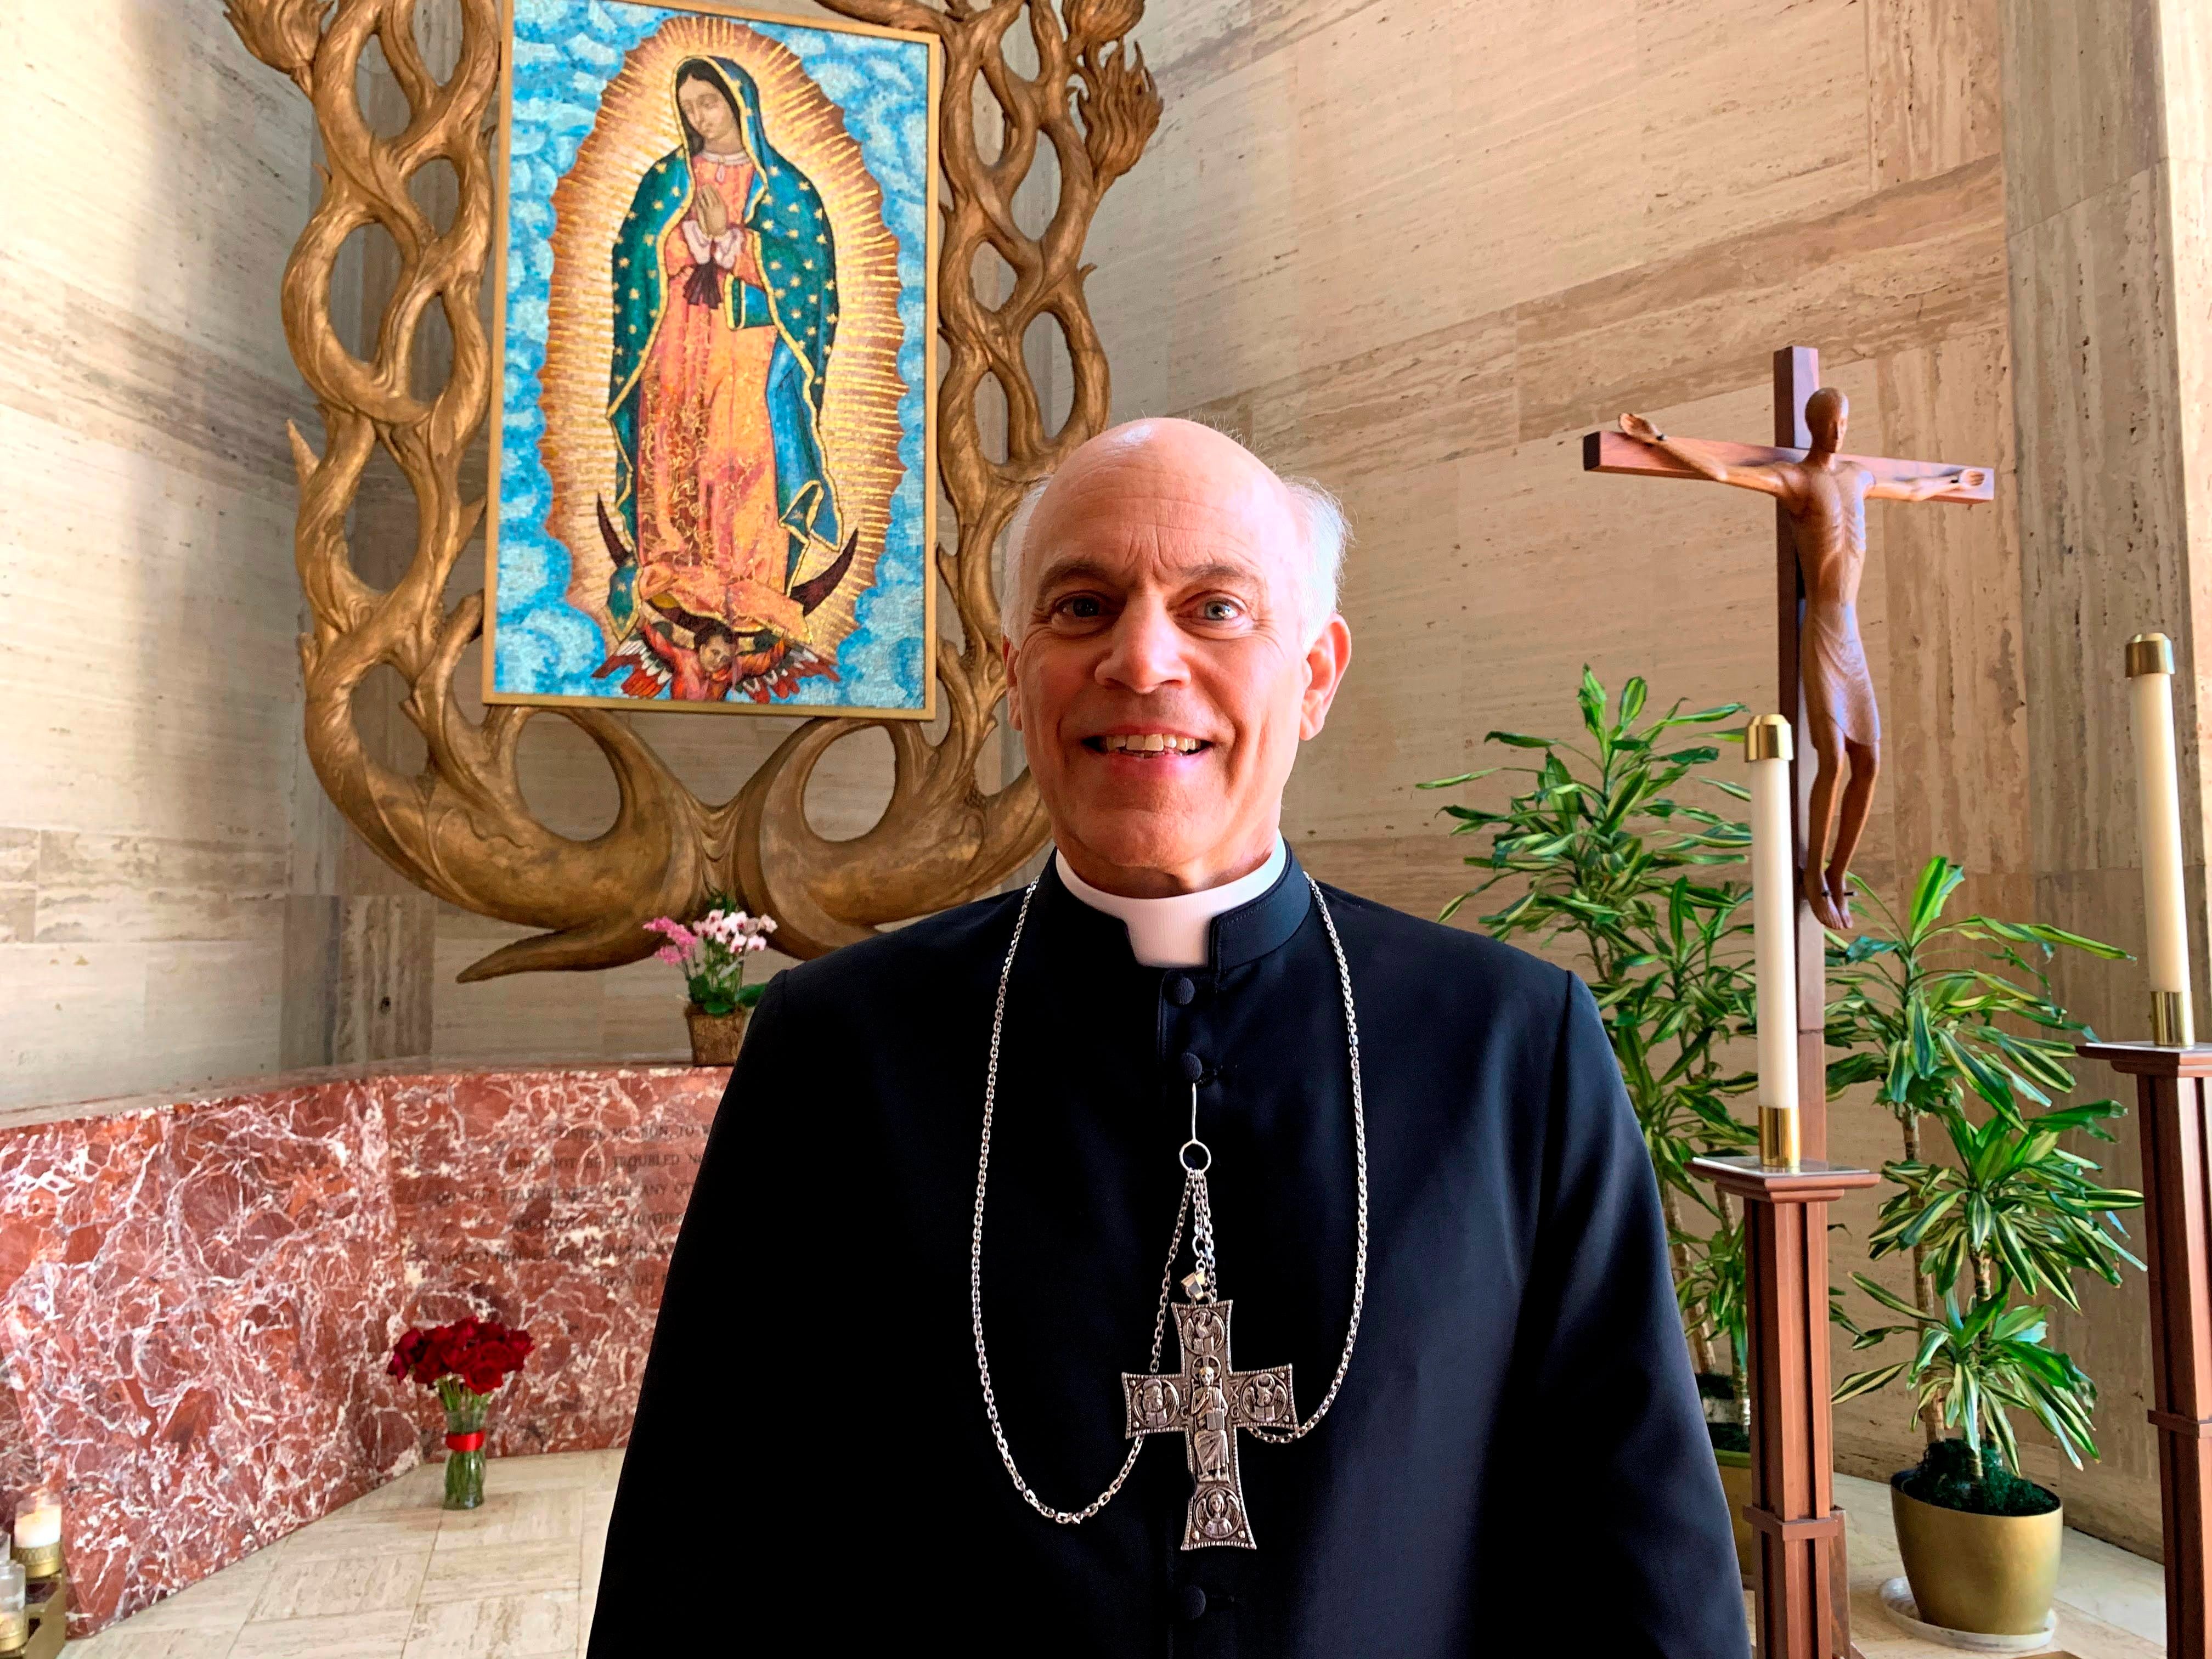 El arzobispo Salvatore Cordileone aseguró que el proceso de quiebra es la mejor solución para proporcionar una compensación justa y equitativa a los supervivientes inocentes que han sido perjudicados (EFE)